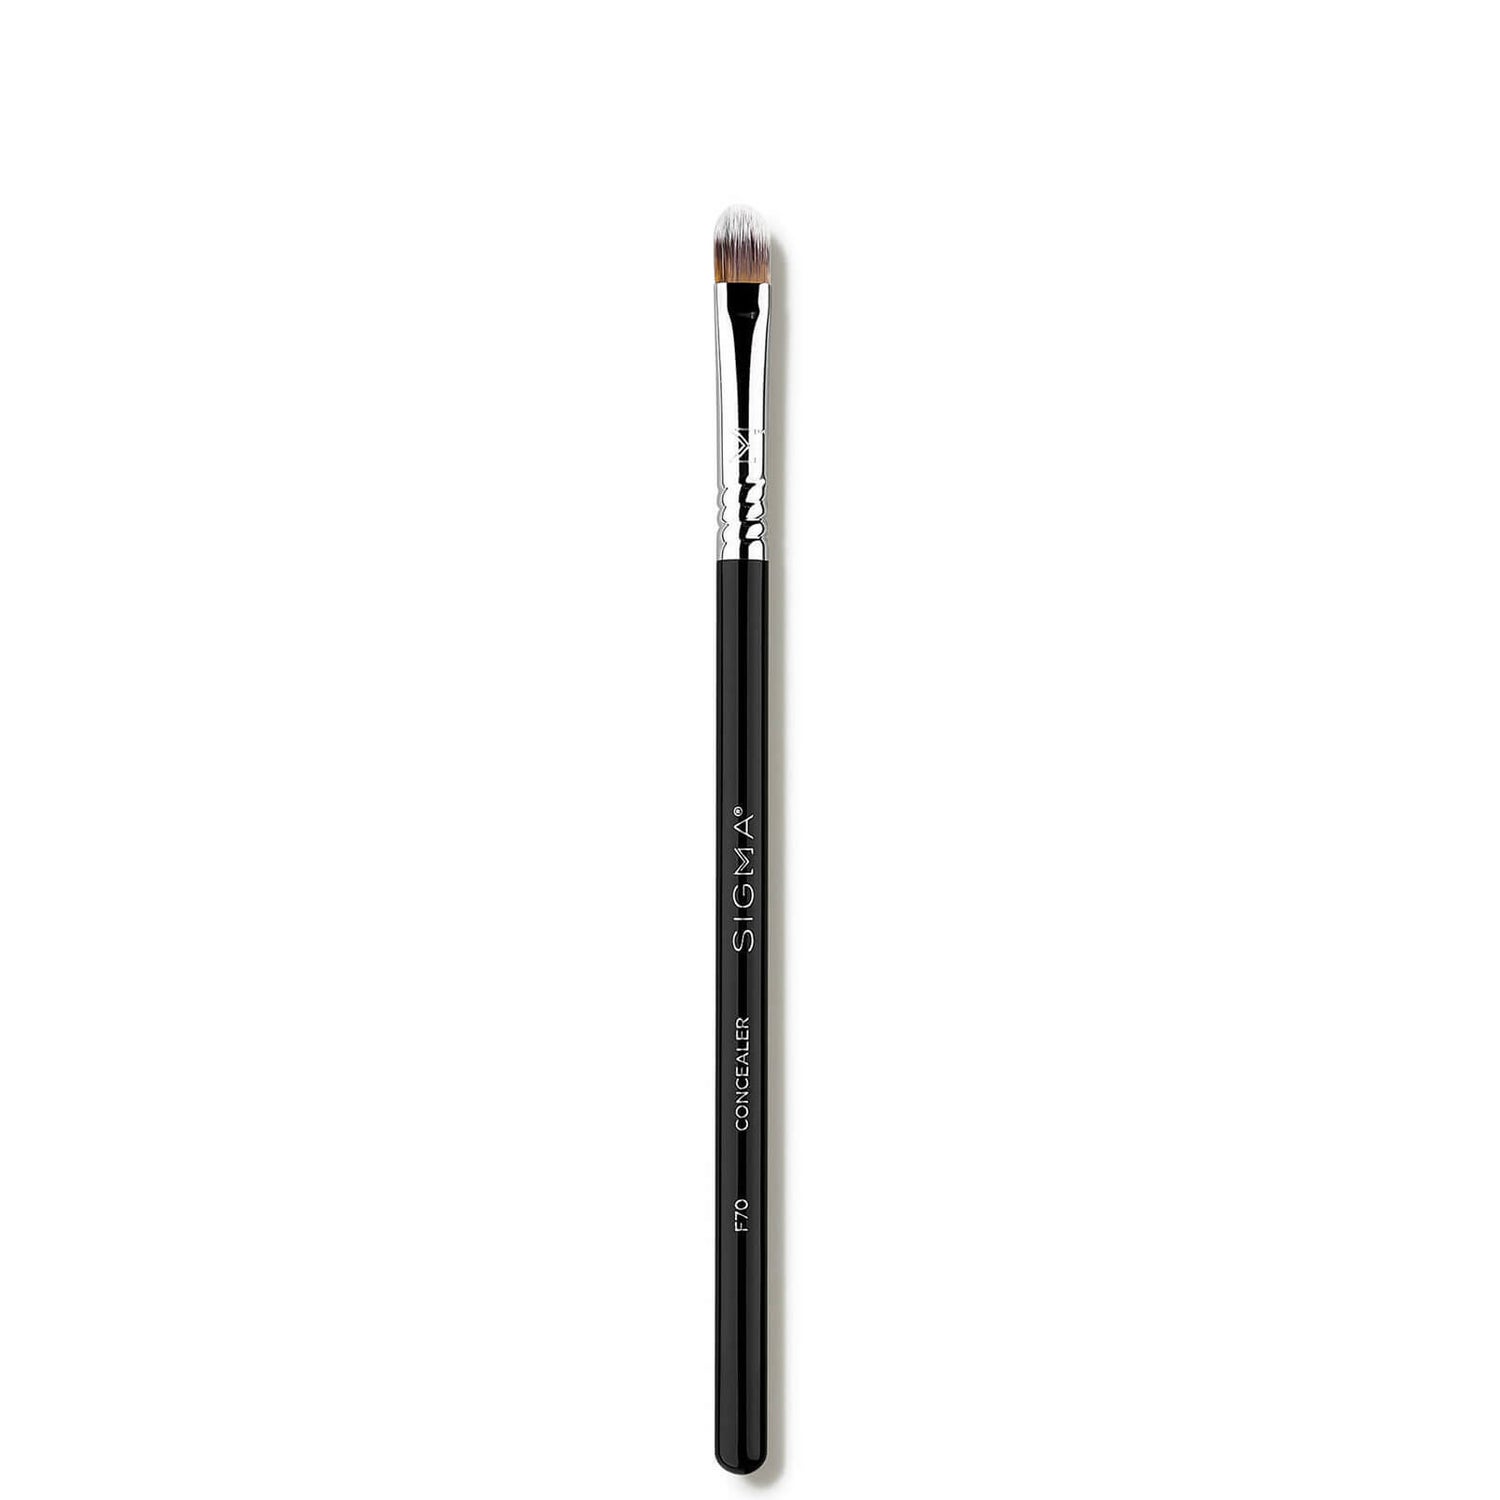 Brocha F70 - Concealer Brush de Sigma Beauty